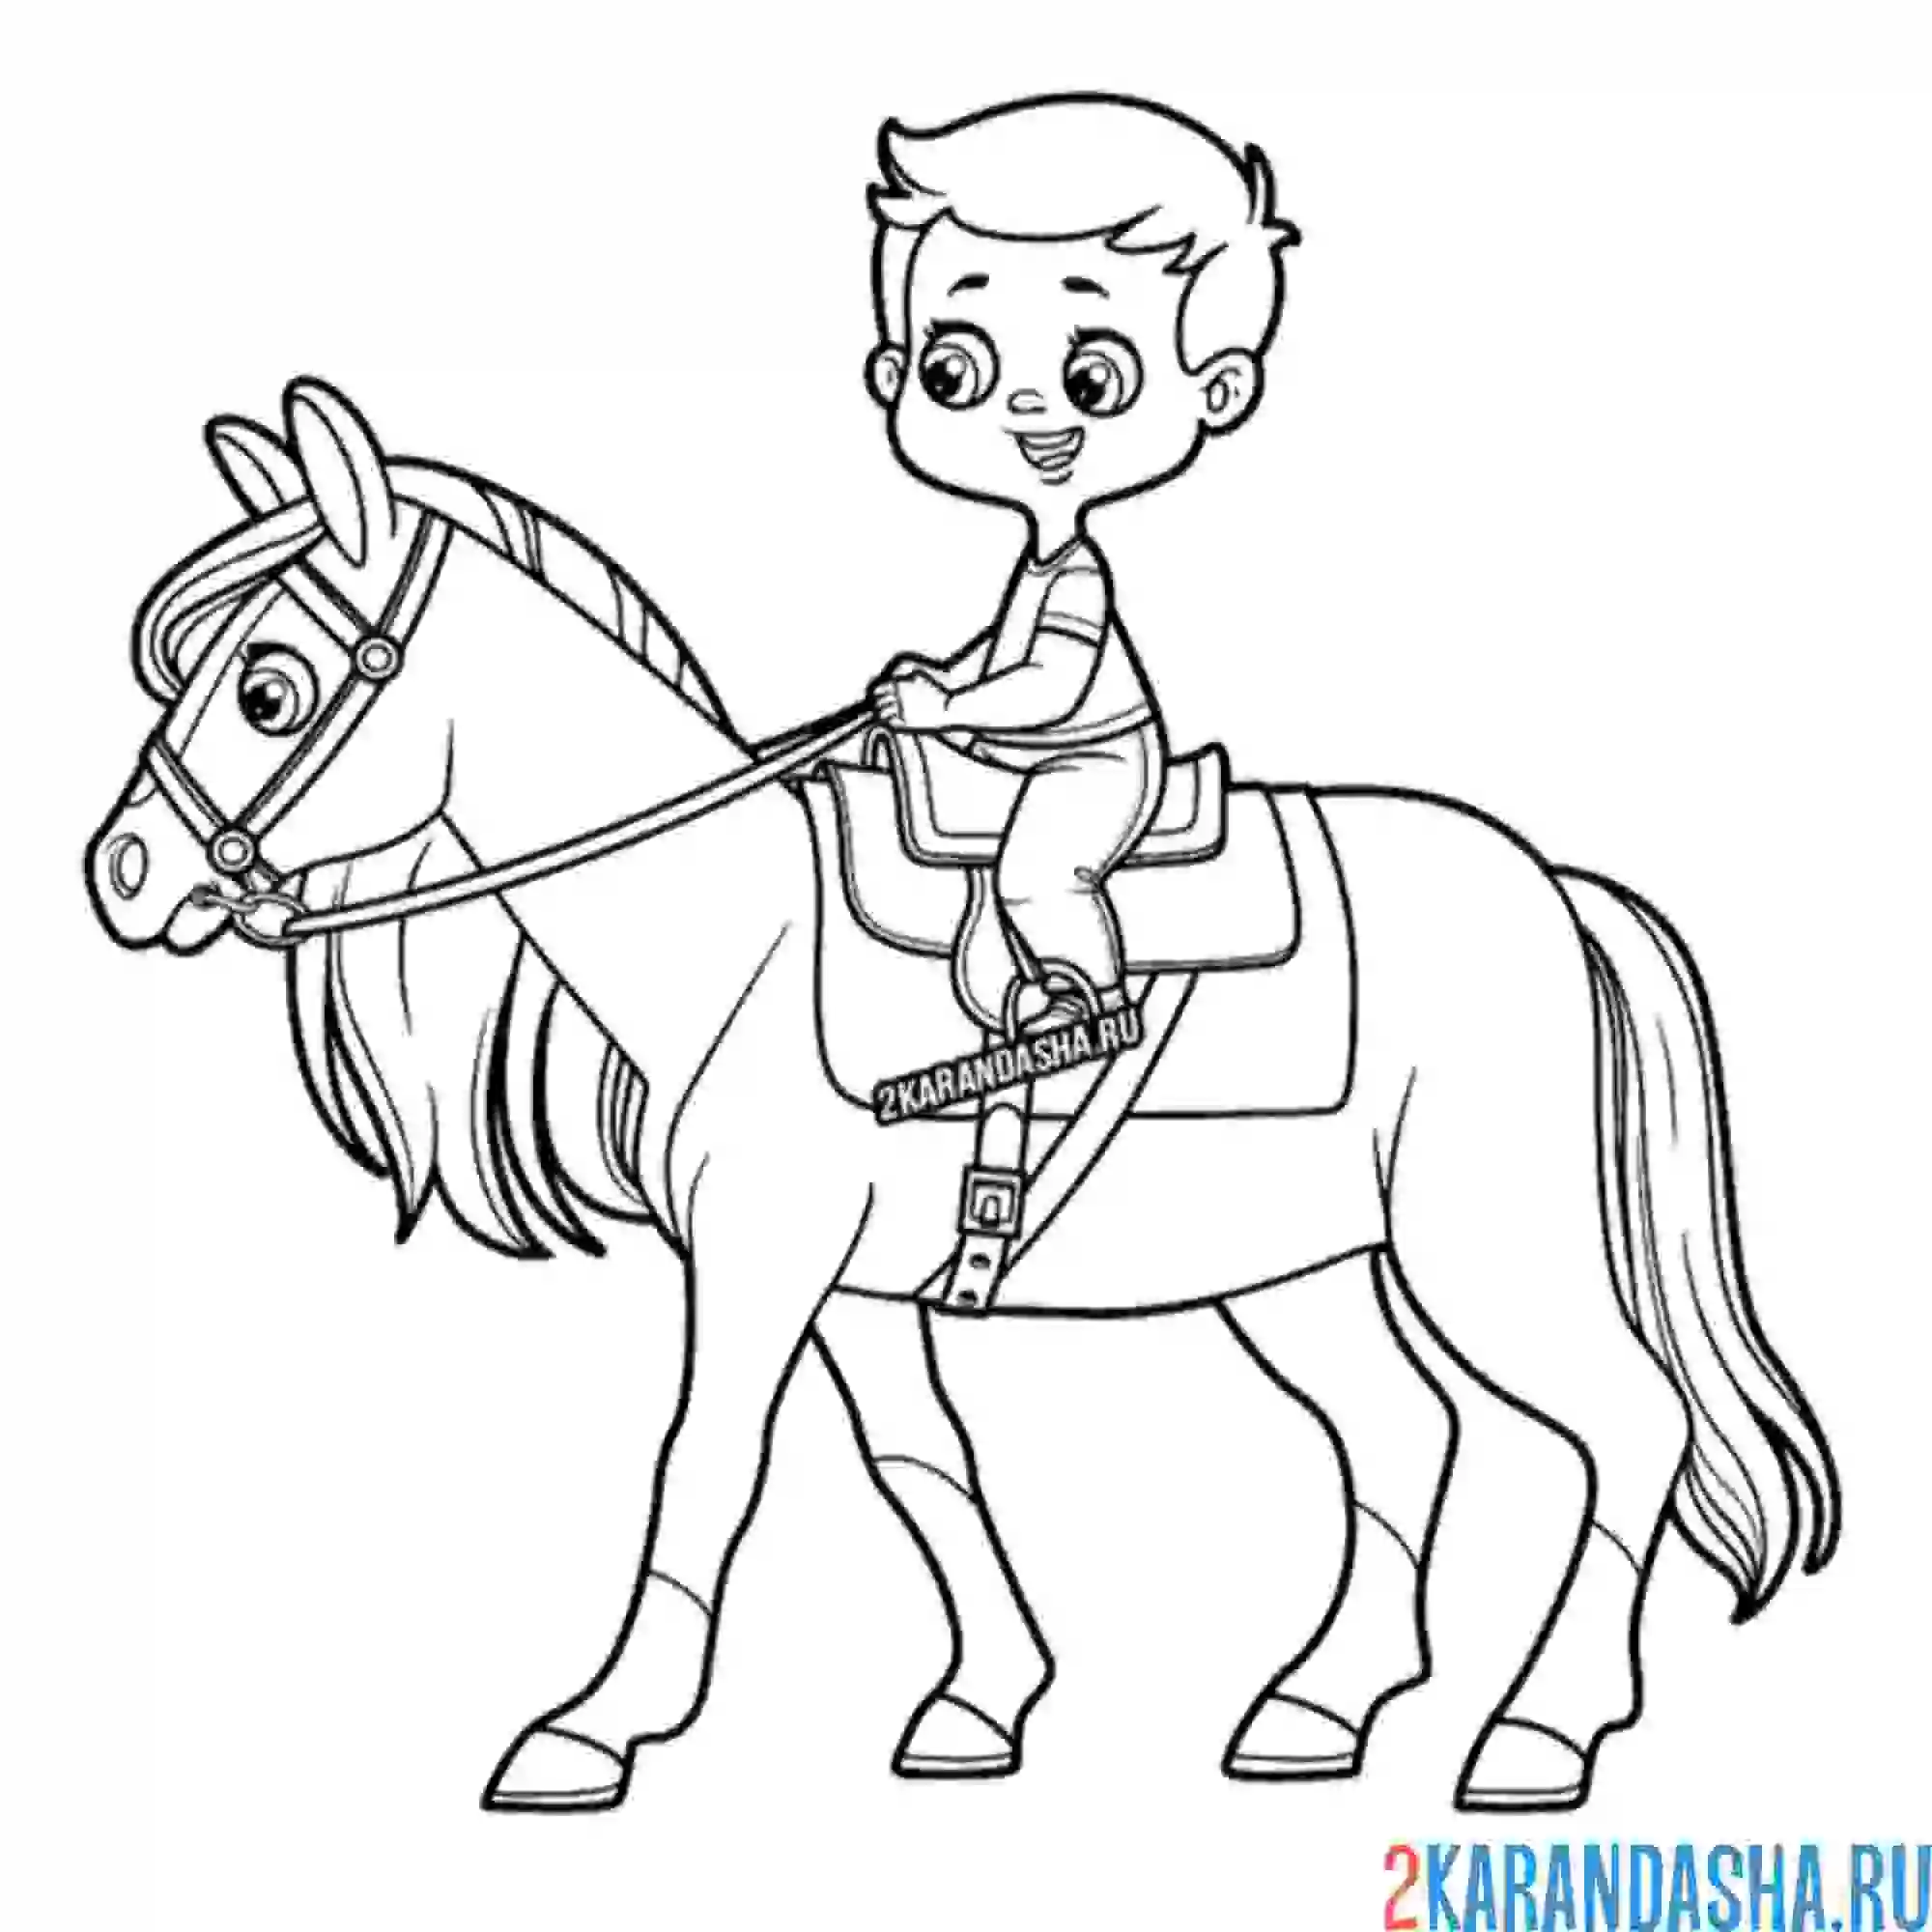 Раскраска мальчик на лошади